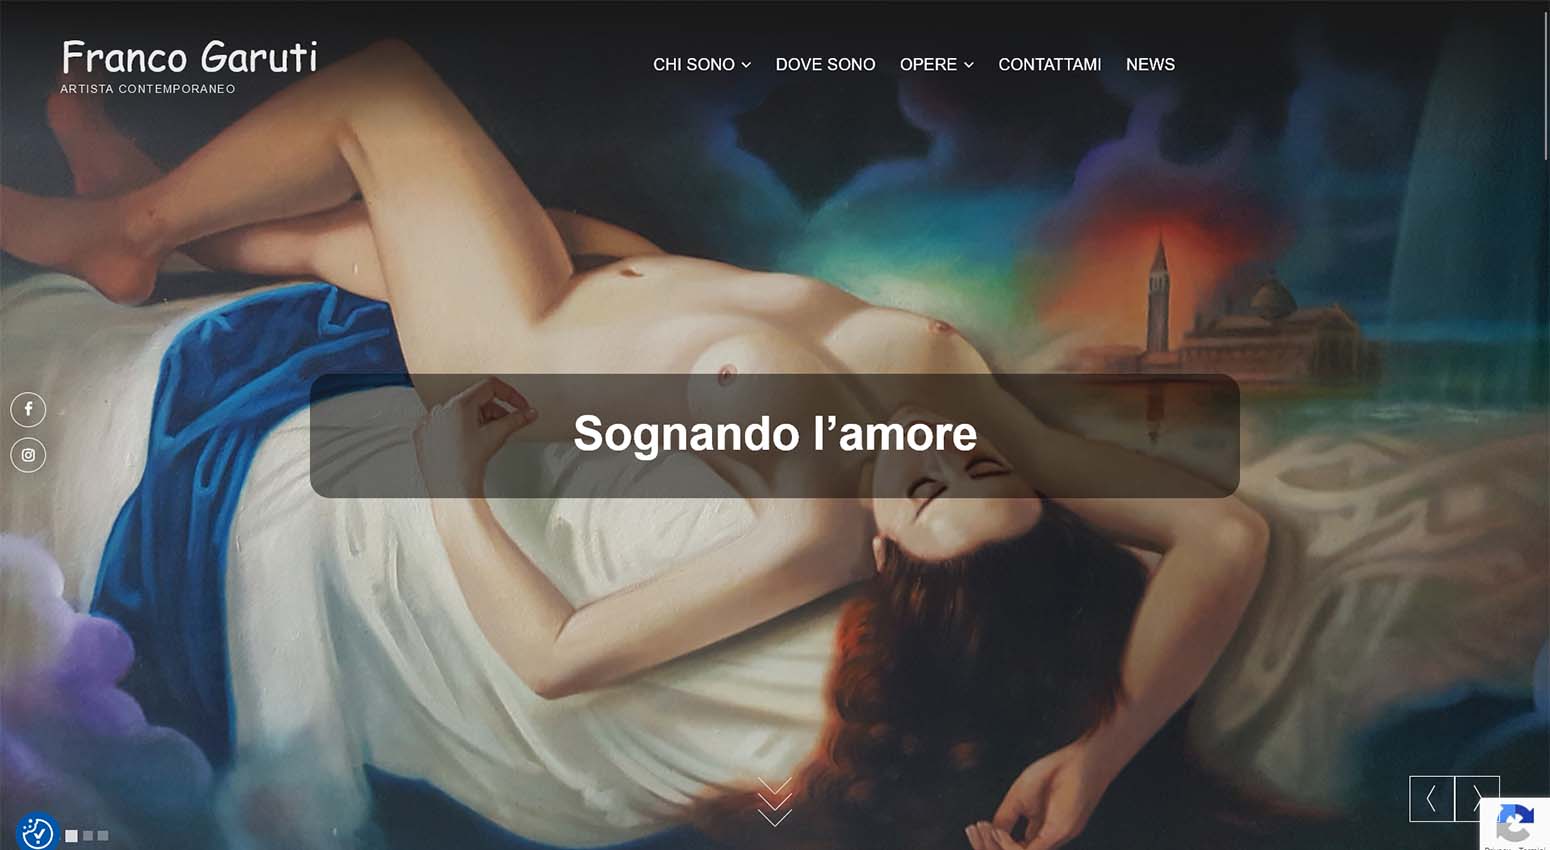 Sito web dell'artista contemporaneo Franco Garuti